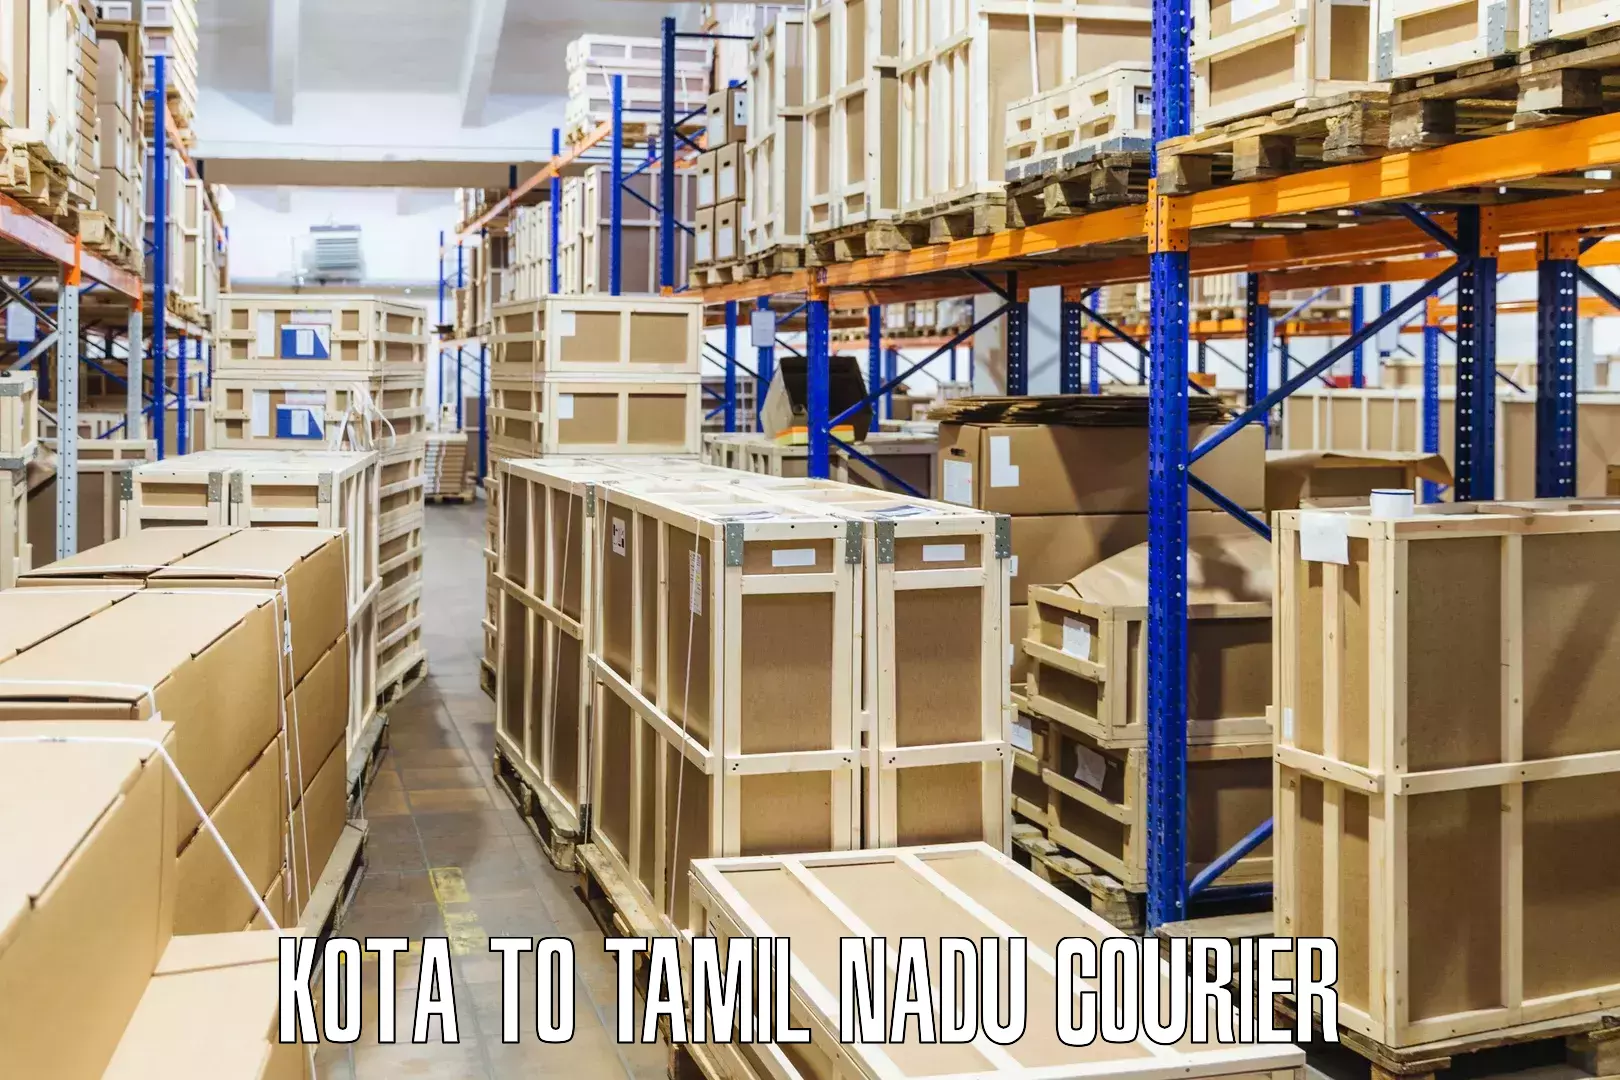 Express logistics providers Kota to Tamil Nadu